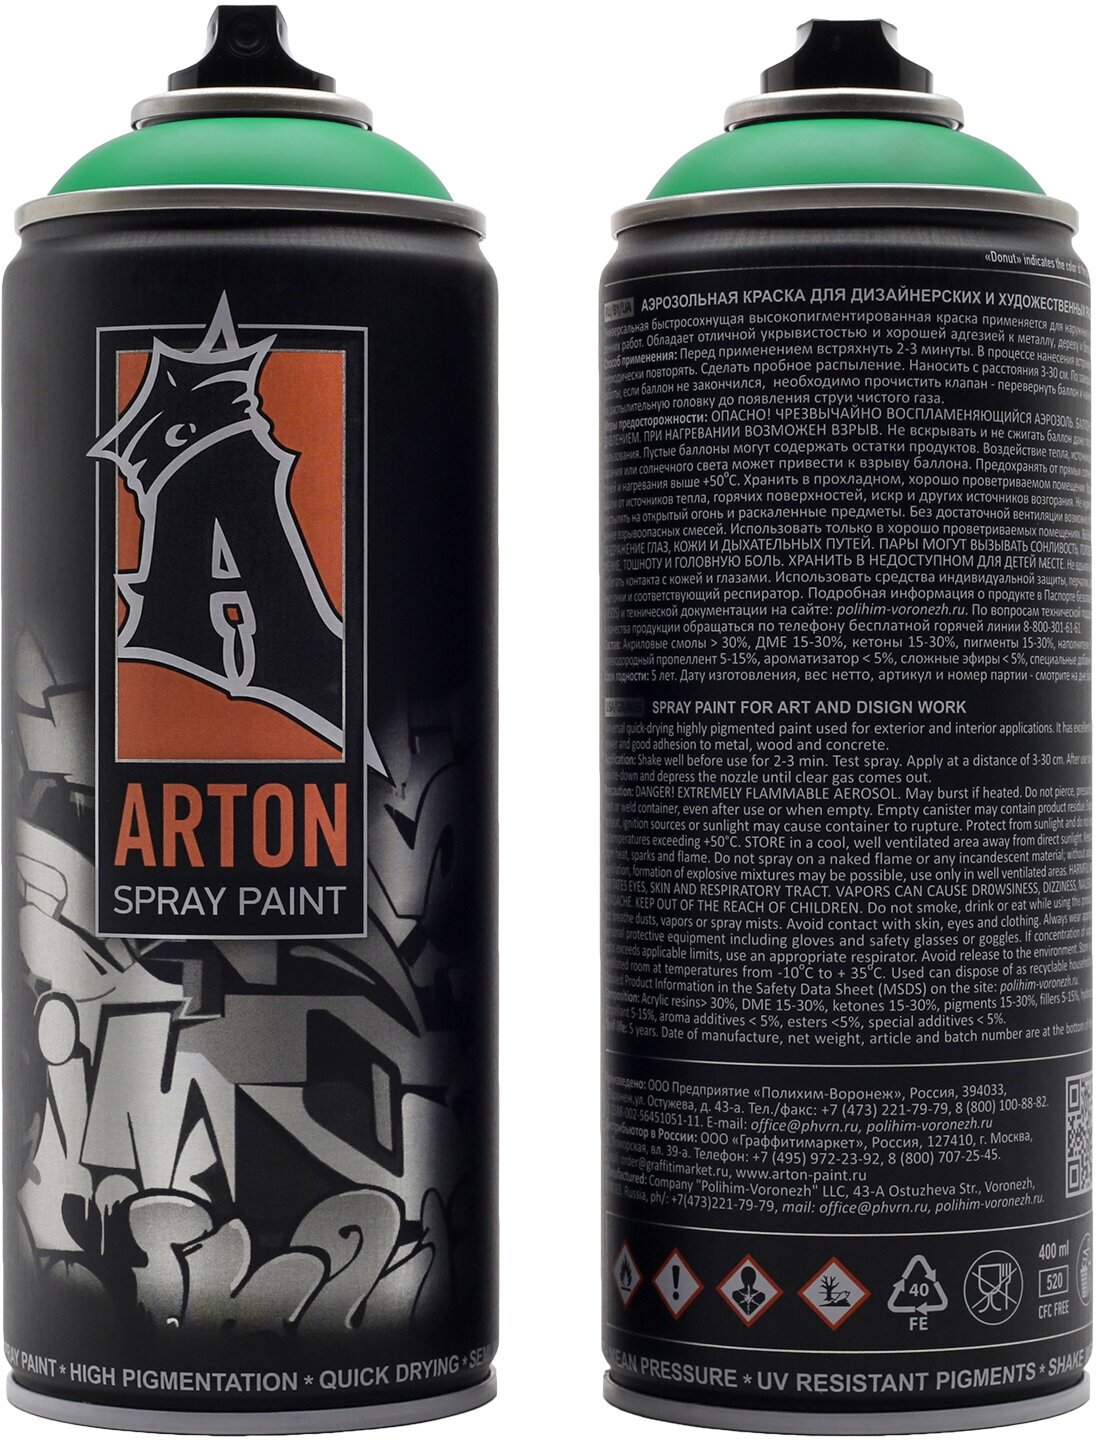 Краска для граффити "Arton" цвет A645 Зак Мини Монстер (Zak Mini Monster) аэрозольная, 400 мл - фотография № 12